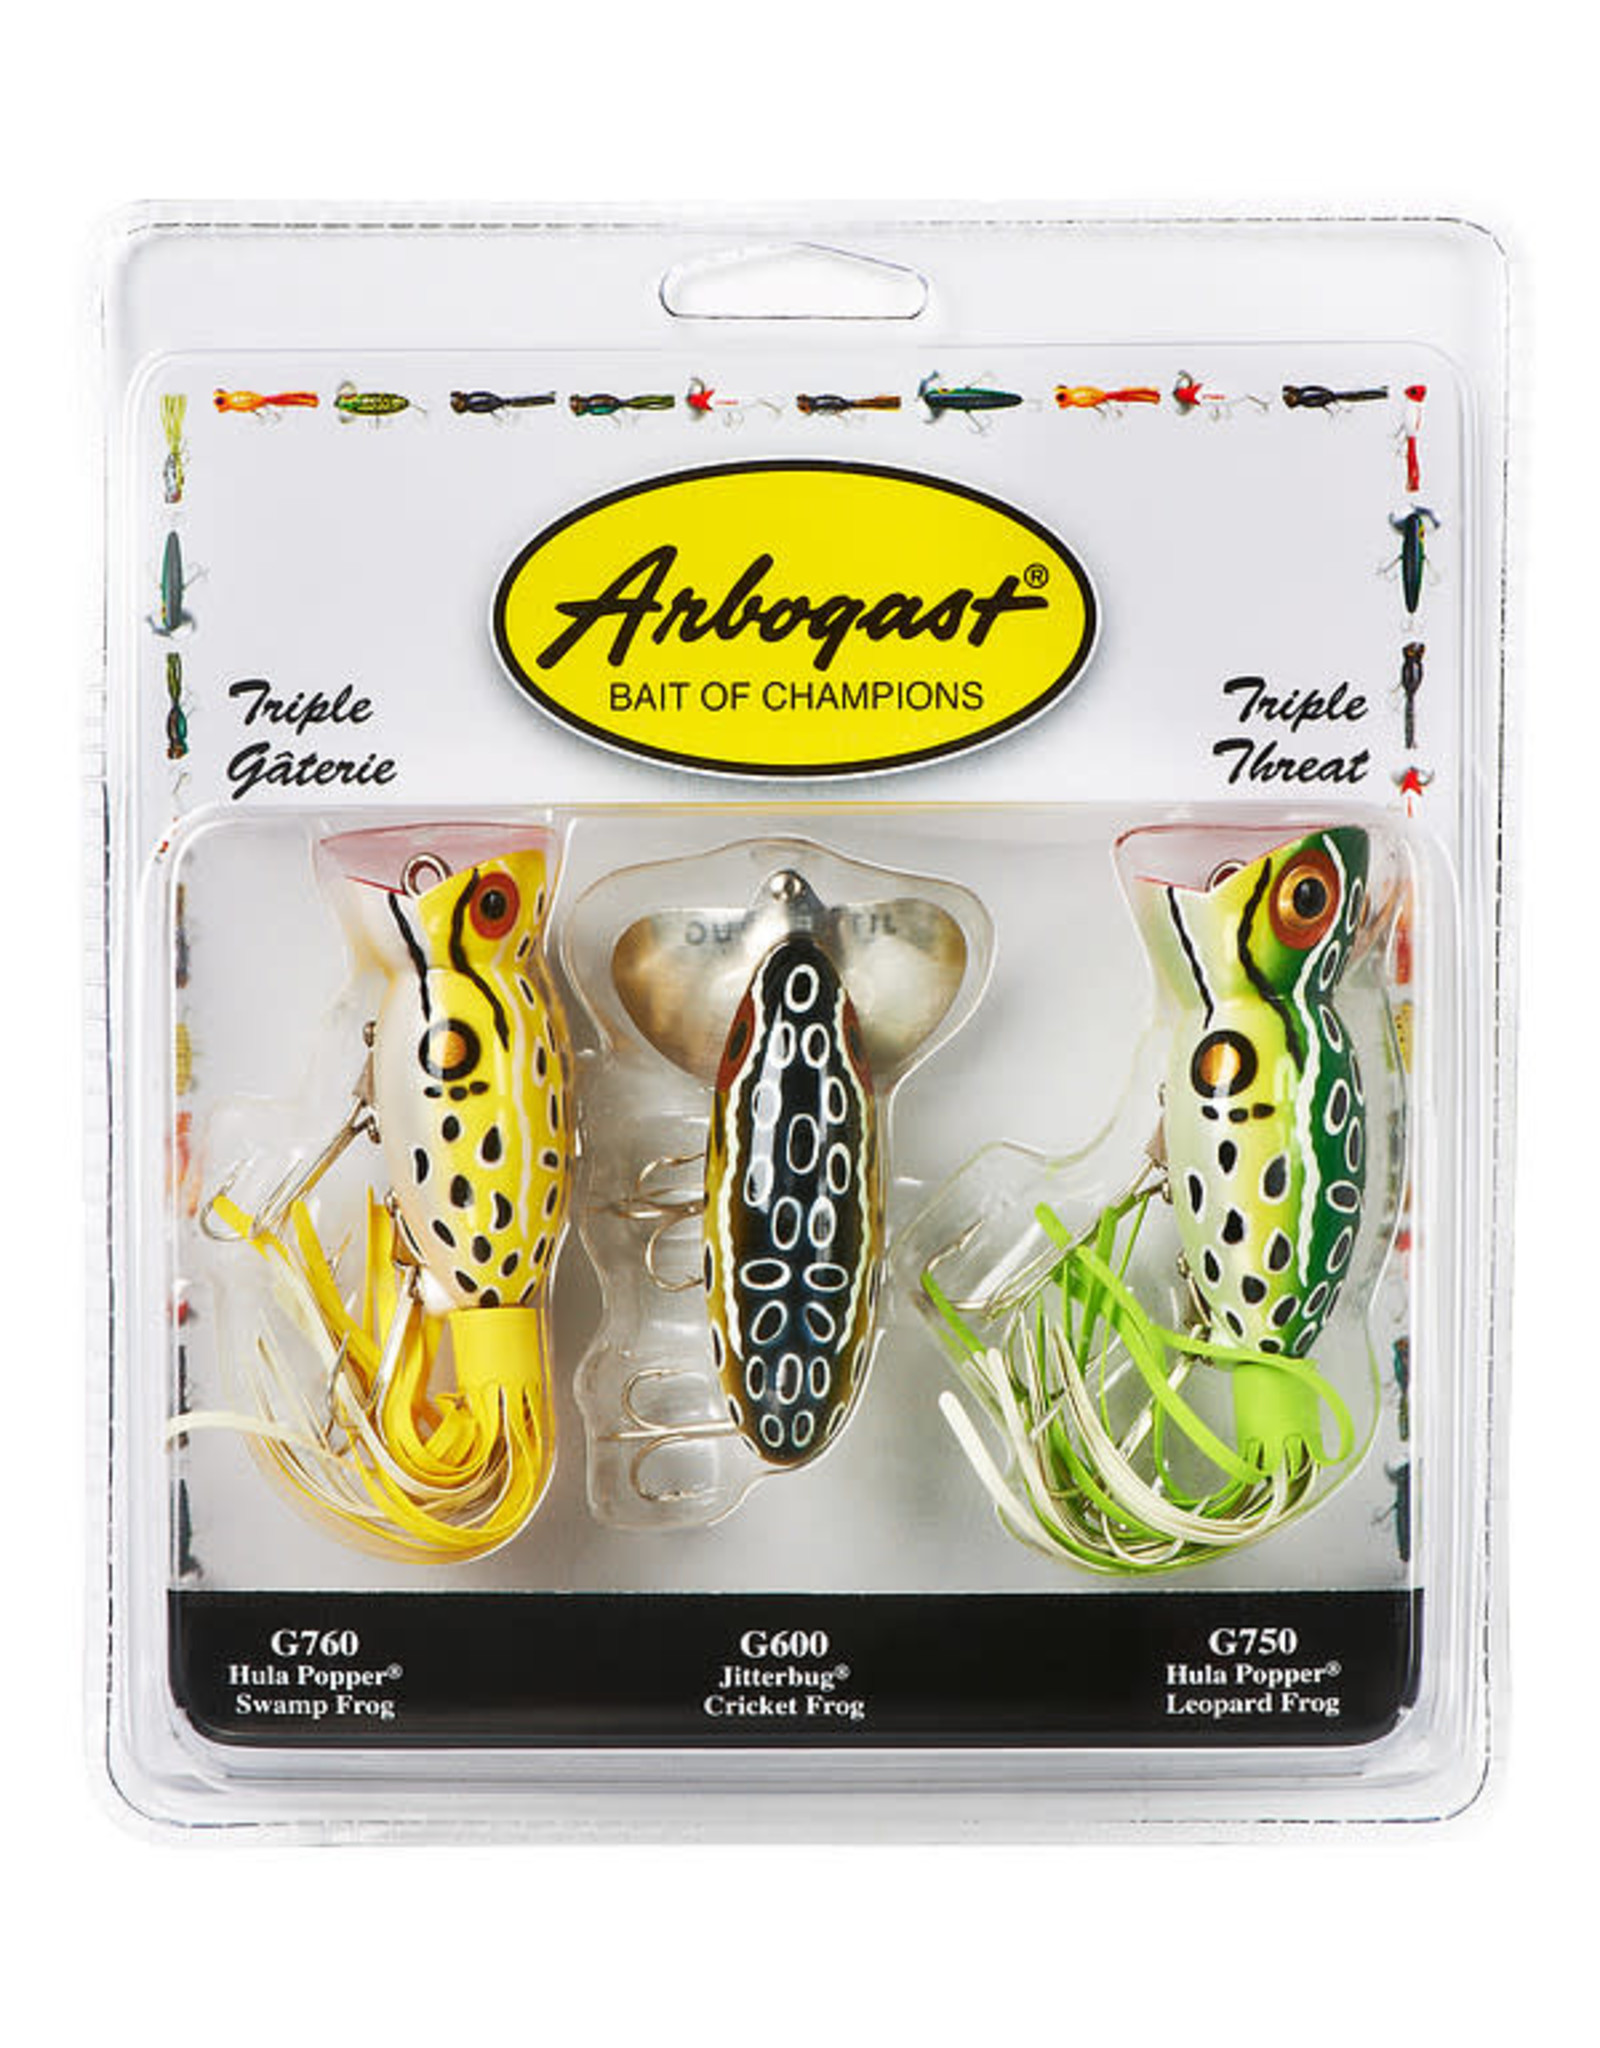 Arbogast 3-PACK / ARBOGAST - Swamp Frog, Cricket Frog, Leopard Frog